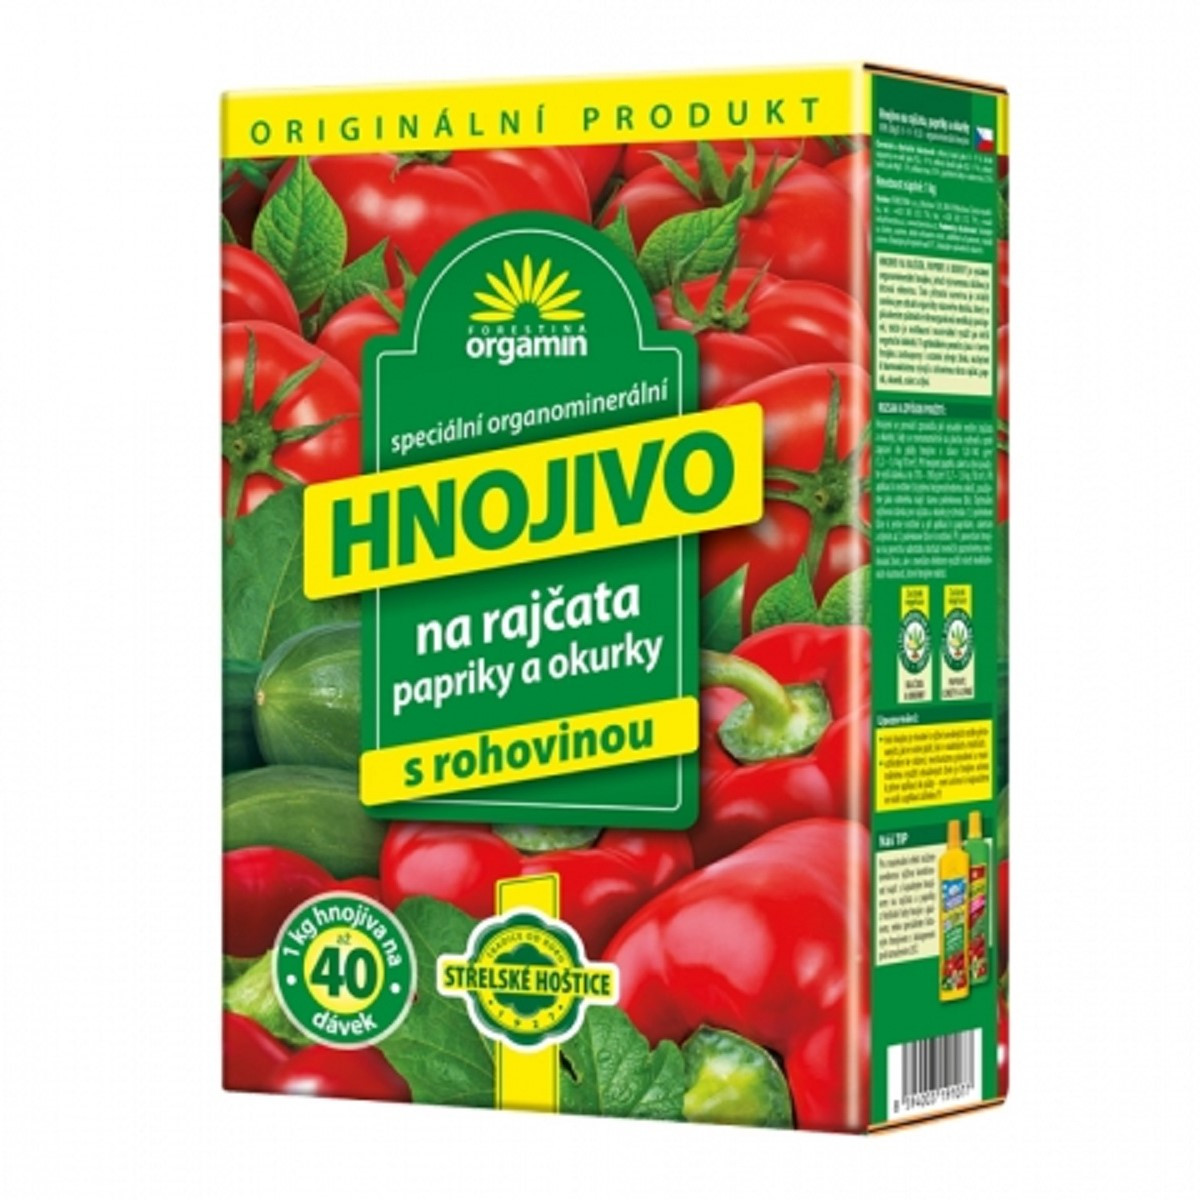 Hnojivo na rajčata, papriky a okurky - AG Biomin - 1 kg